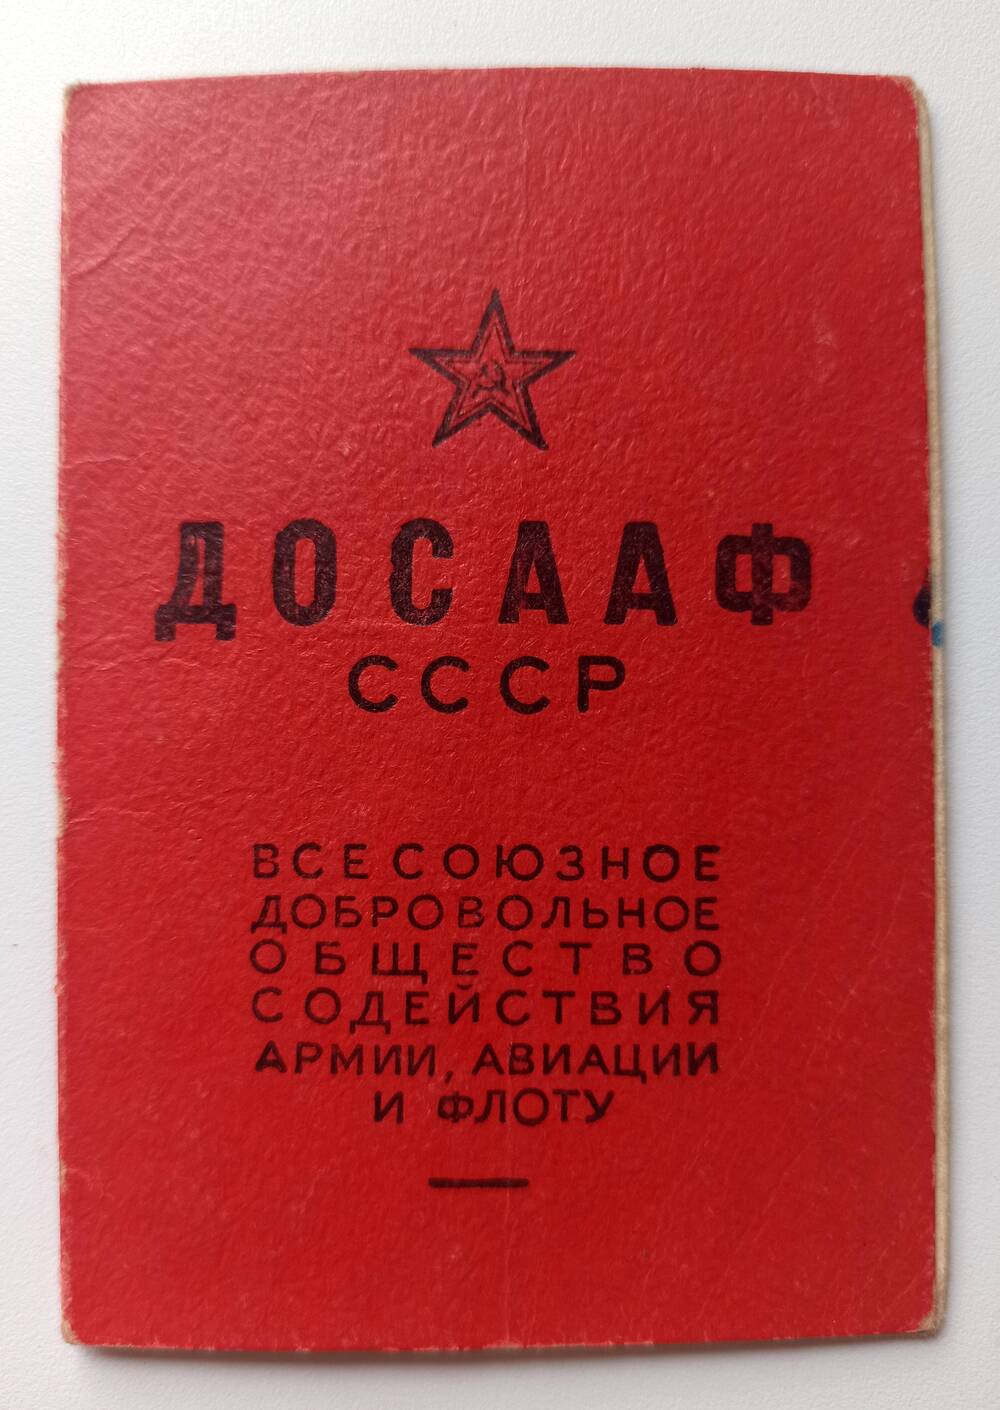 Членский билет ДОСААФ СССР Гилканова Степана Иннокентьевича